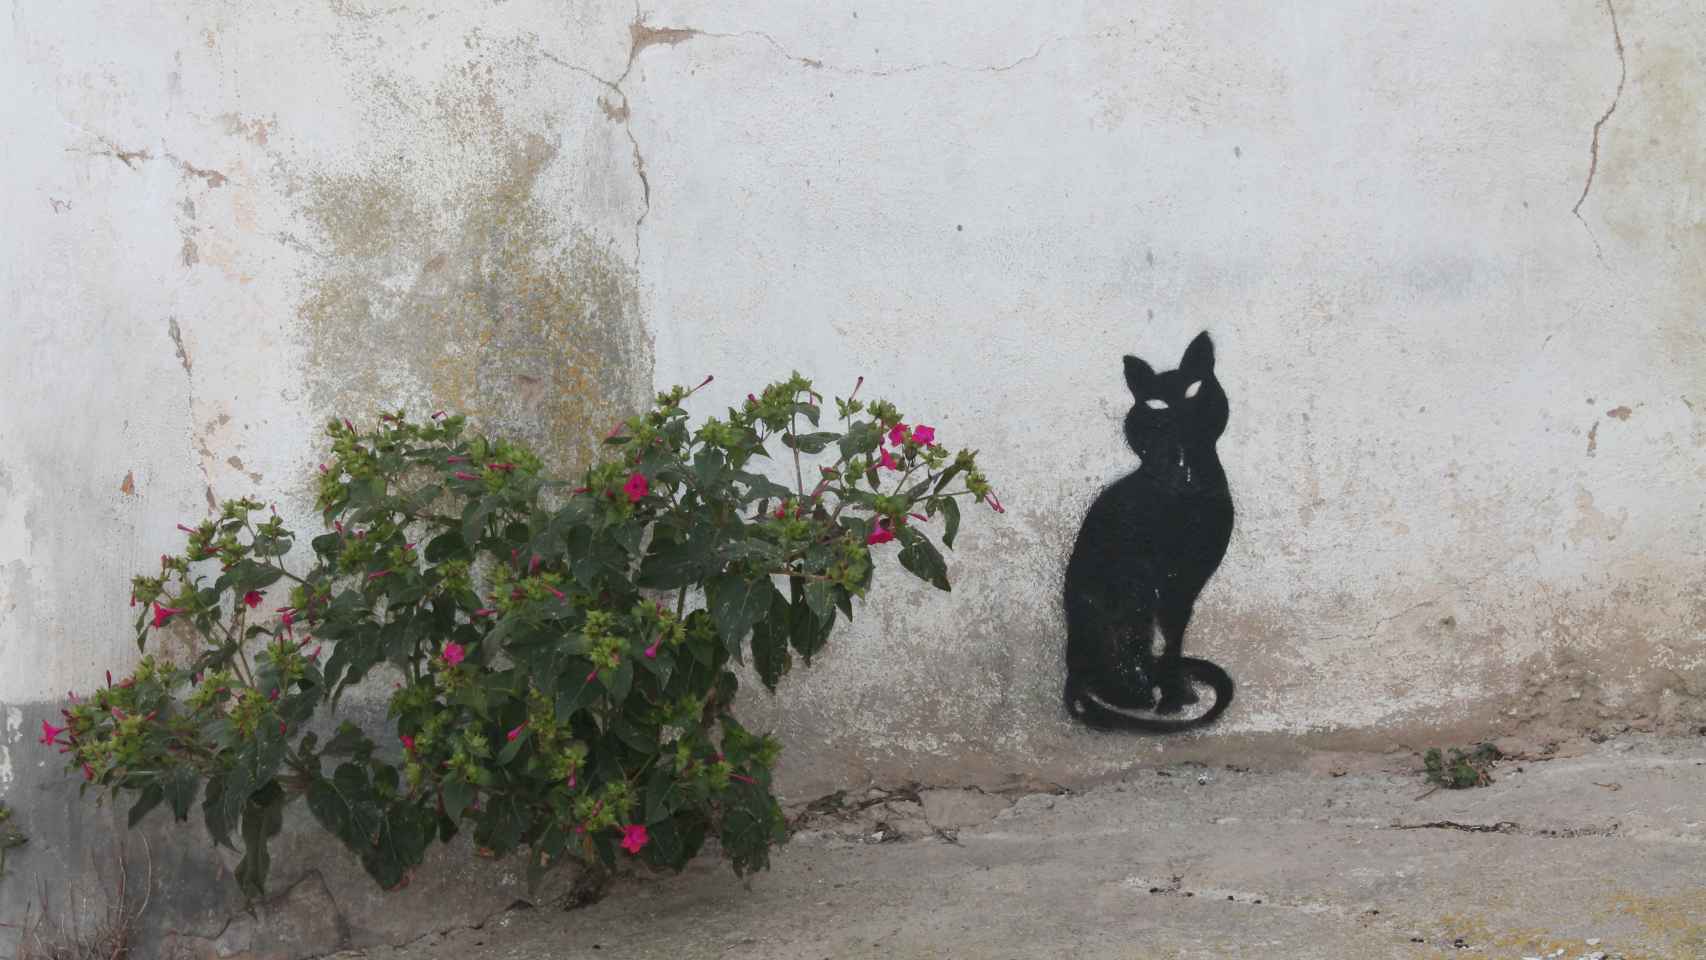 En Trasmoz ha aparecido este grafiti de un gato negro, animal mágico asociado a la brujería.